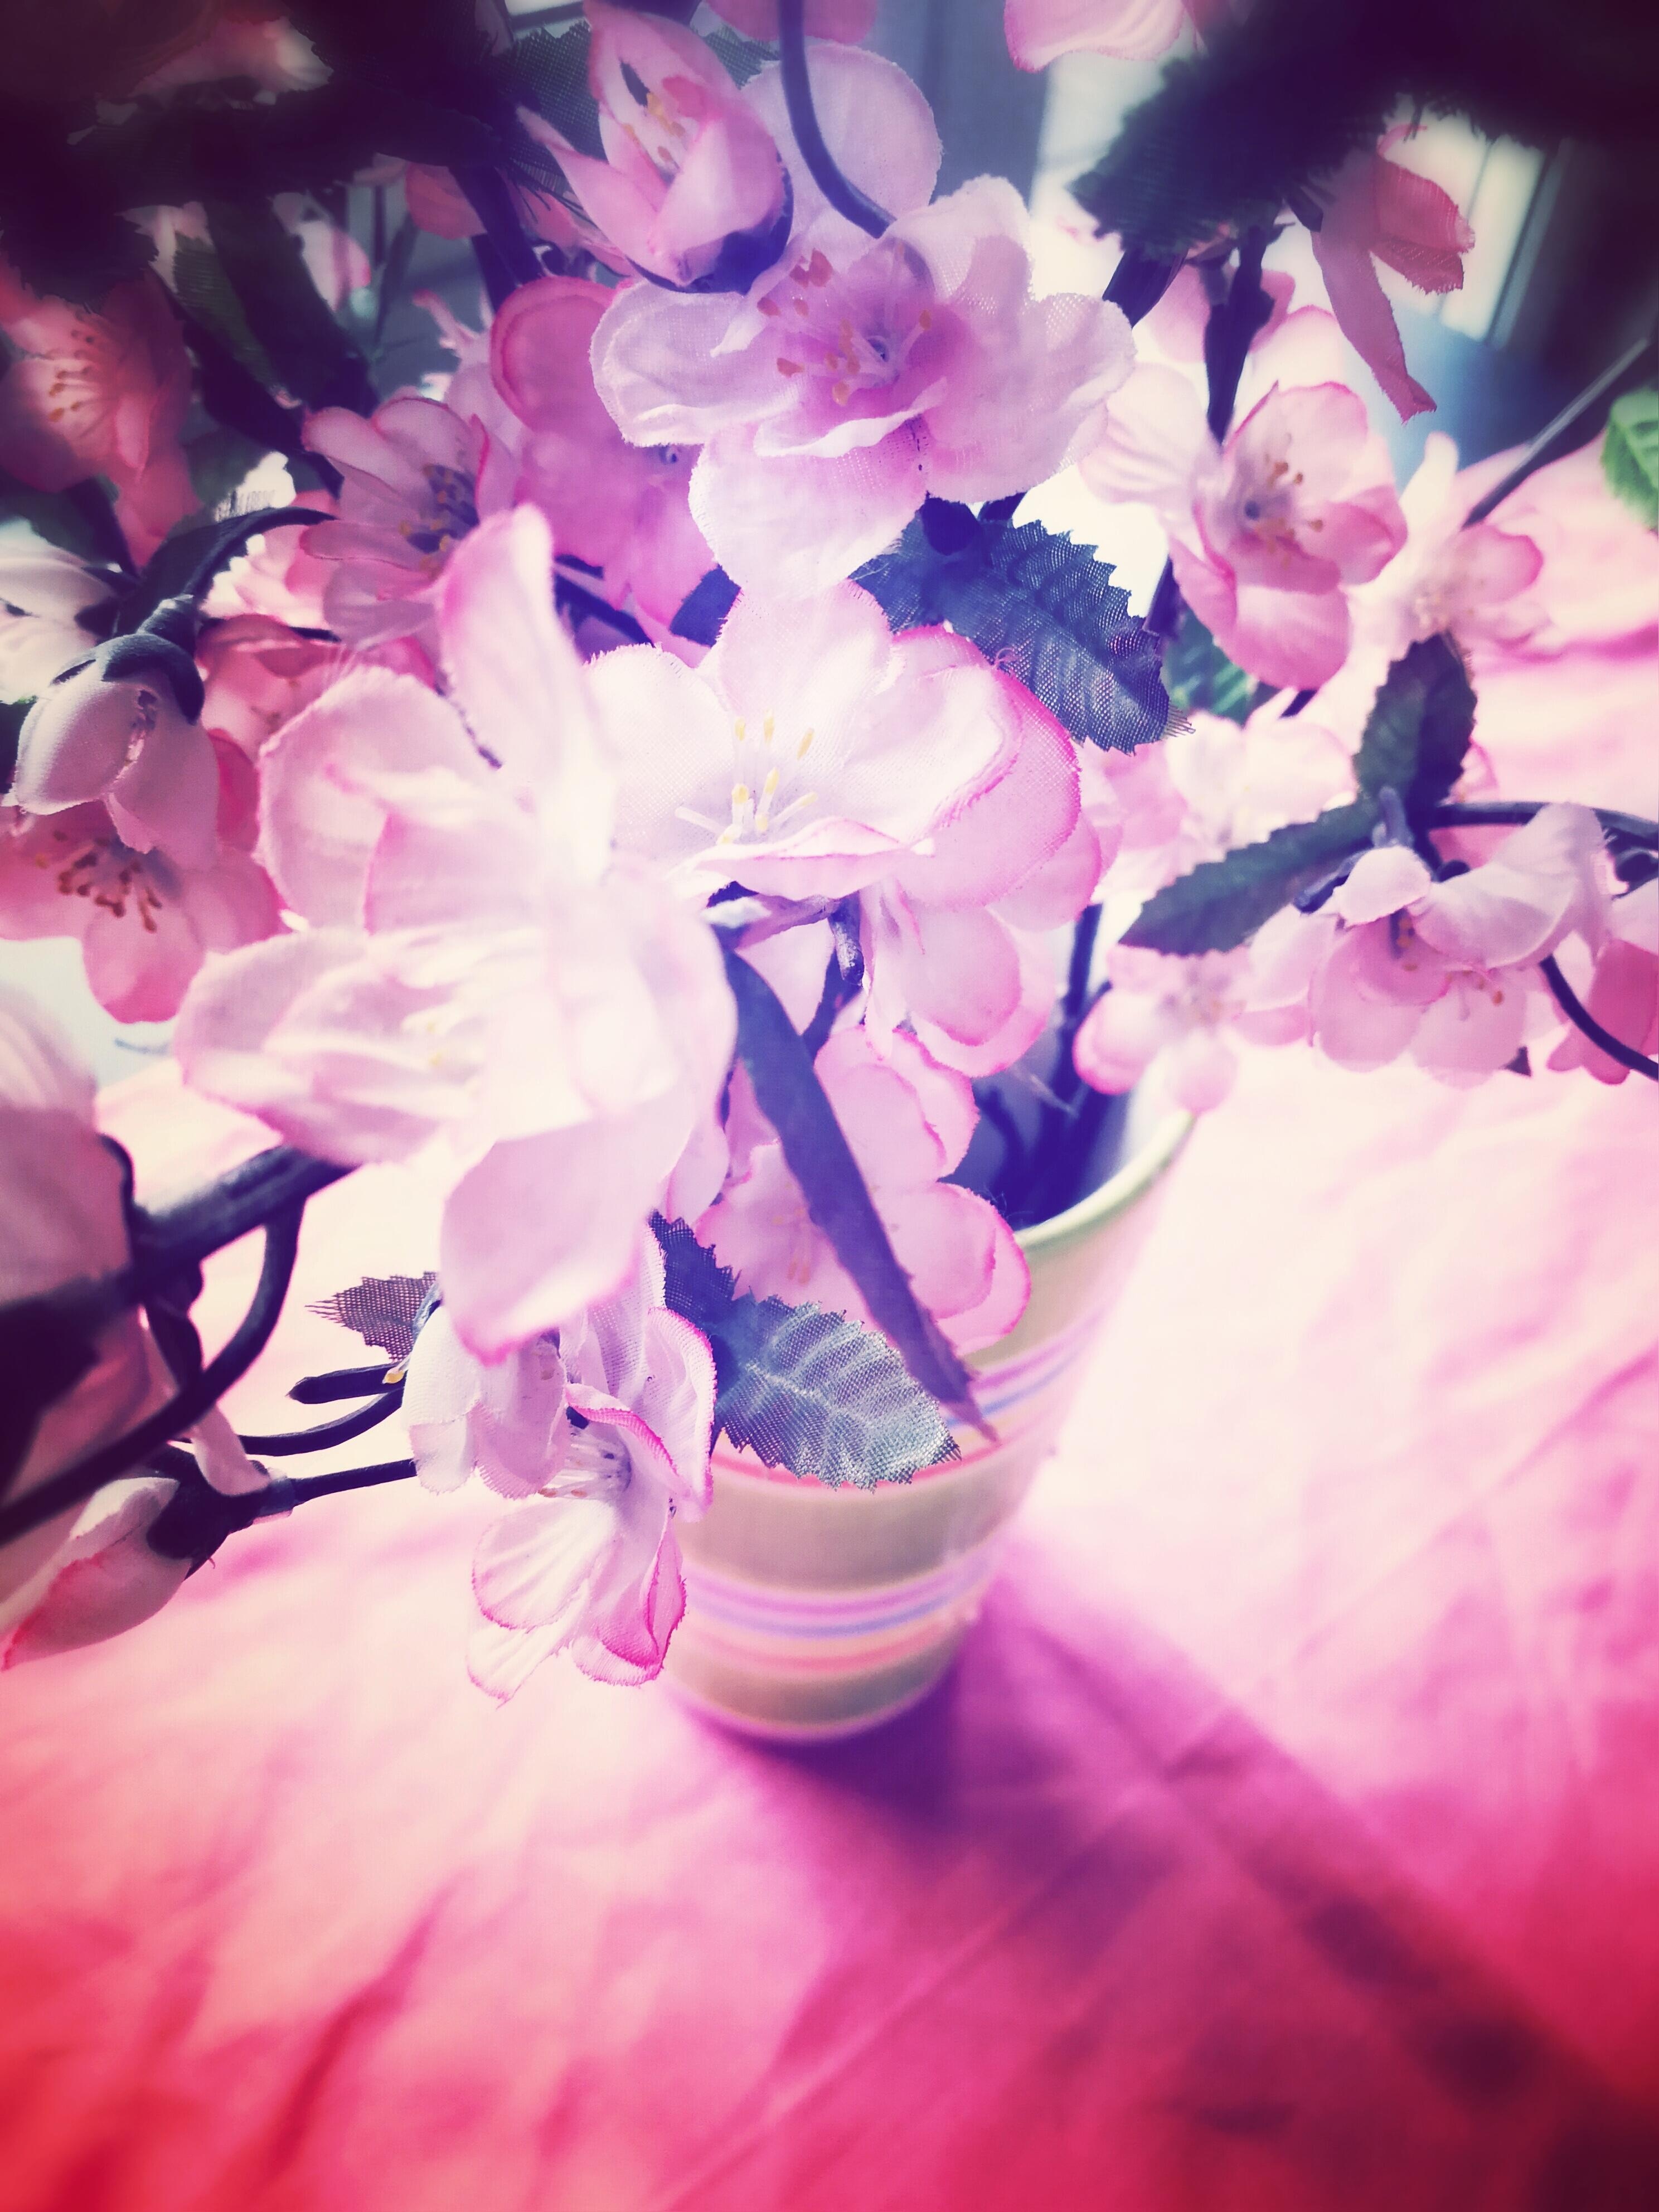 Pink flower power🌸🌺🌸
#Blumenvase #pink 